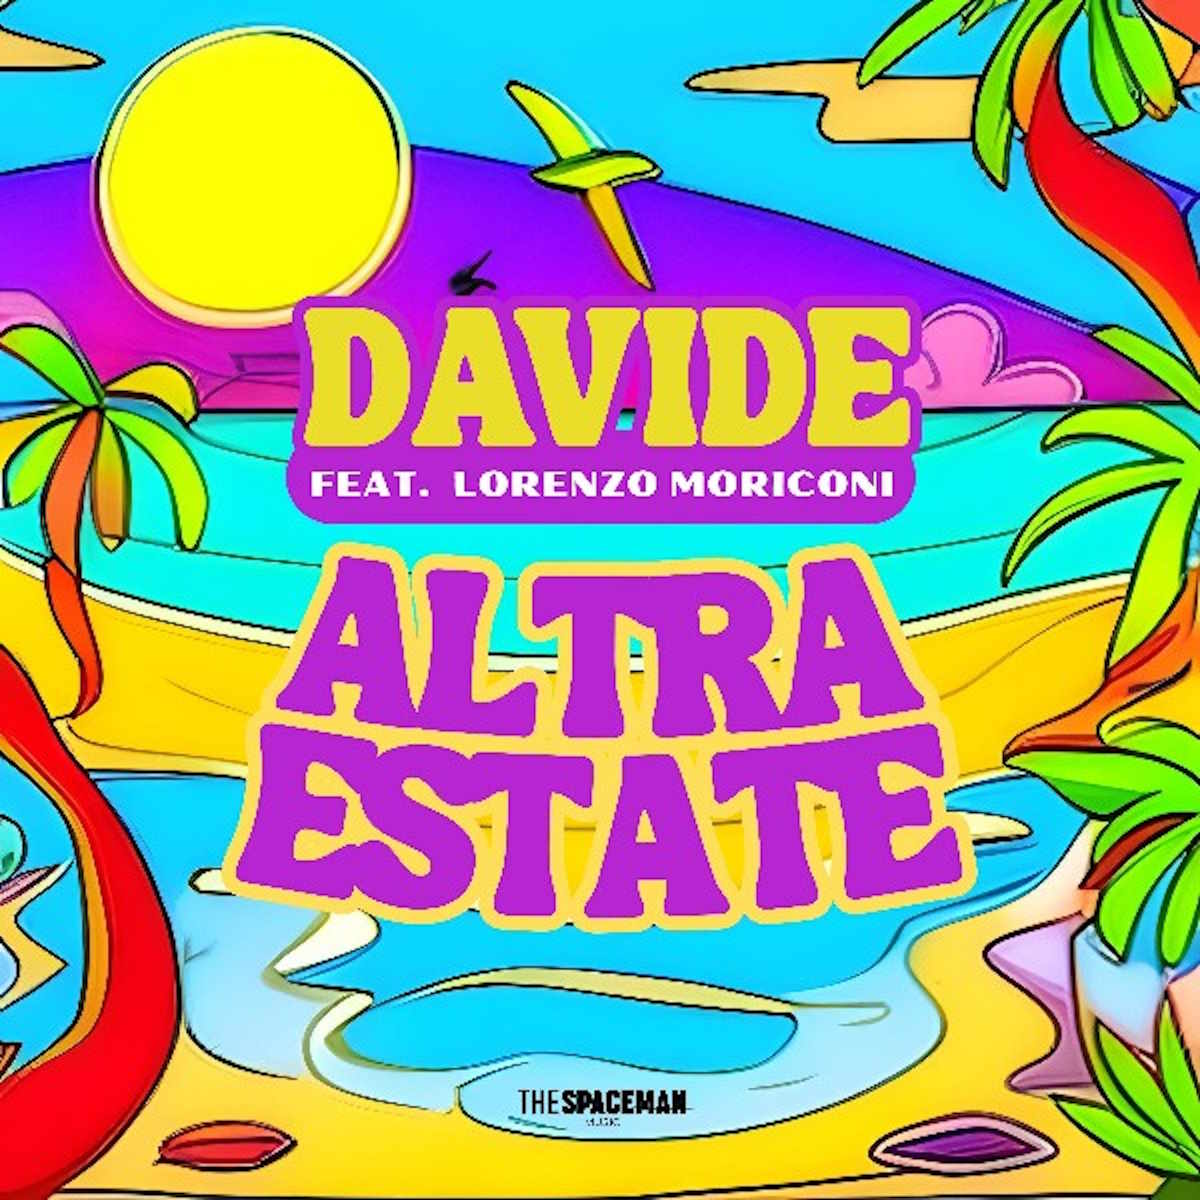 Il nuovo singolo di Davide  Altra Estate